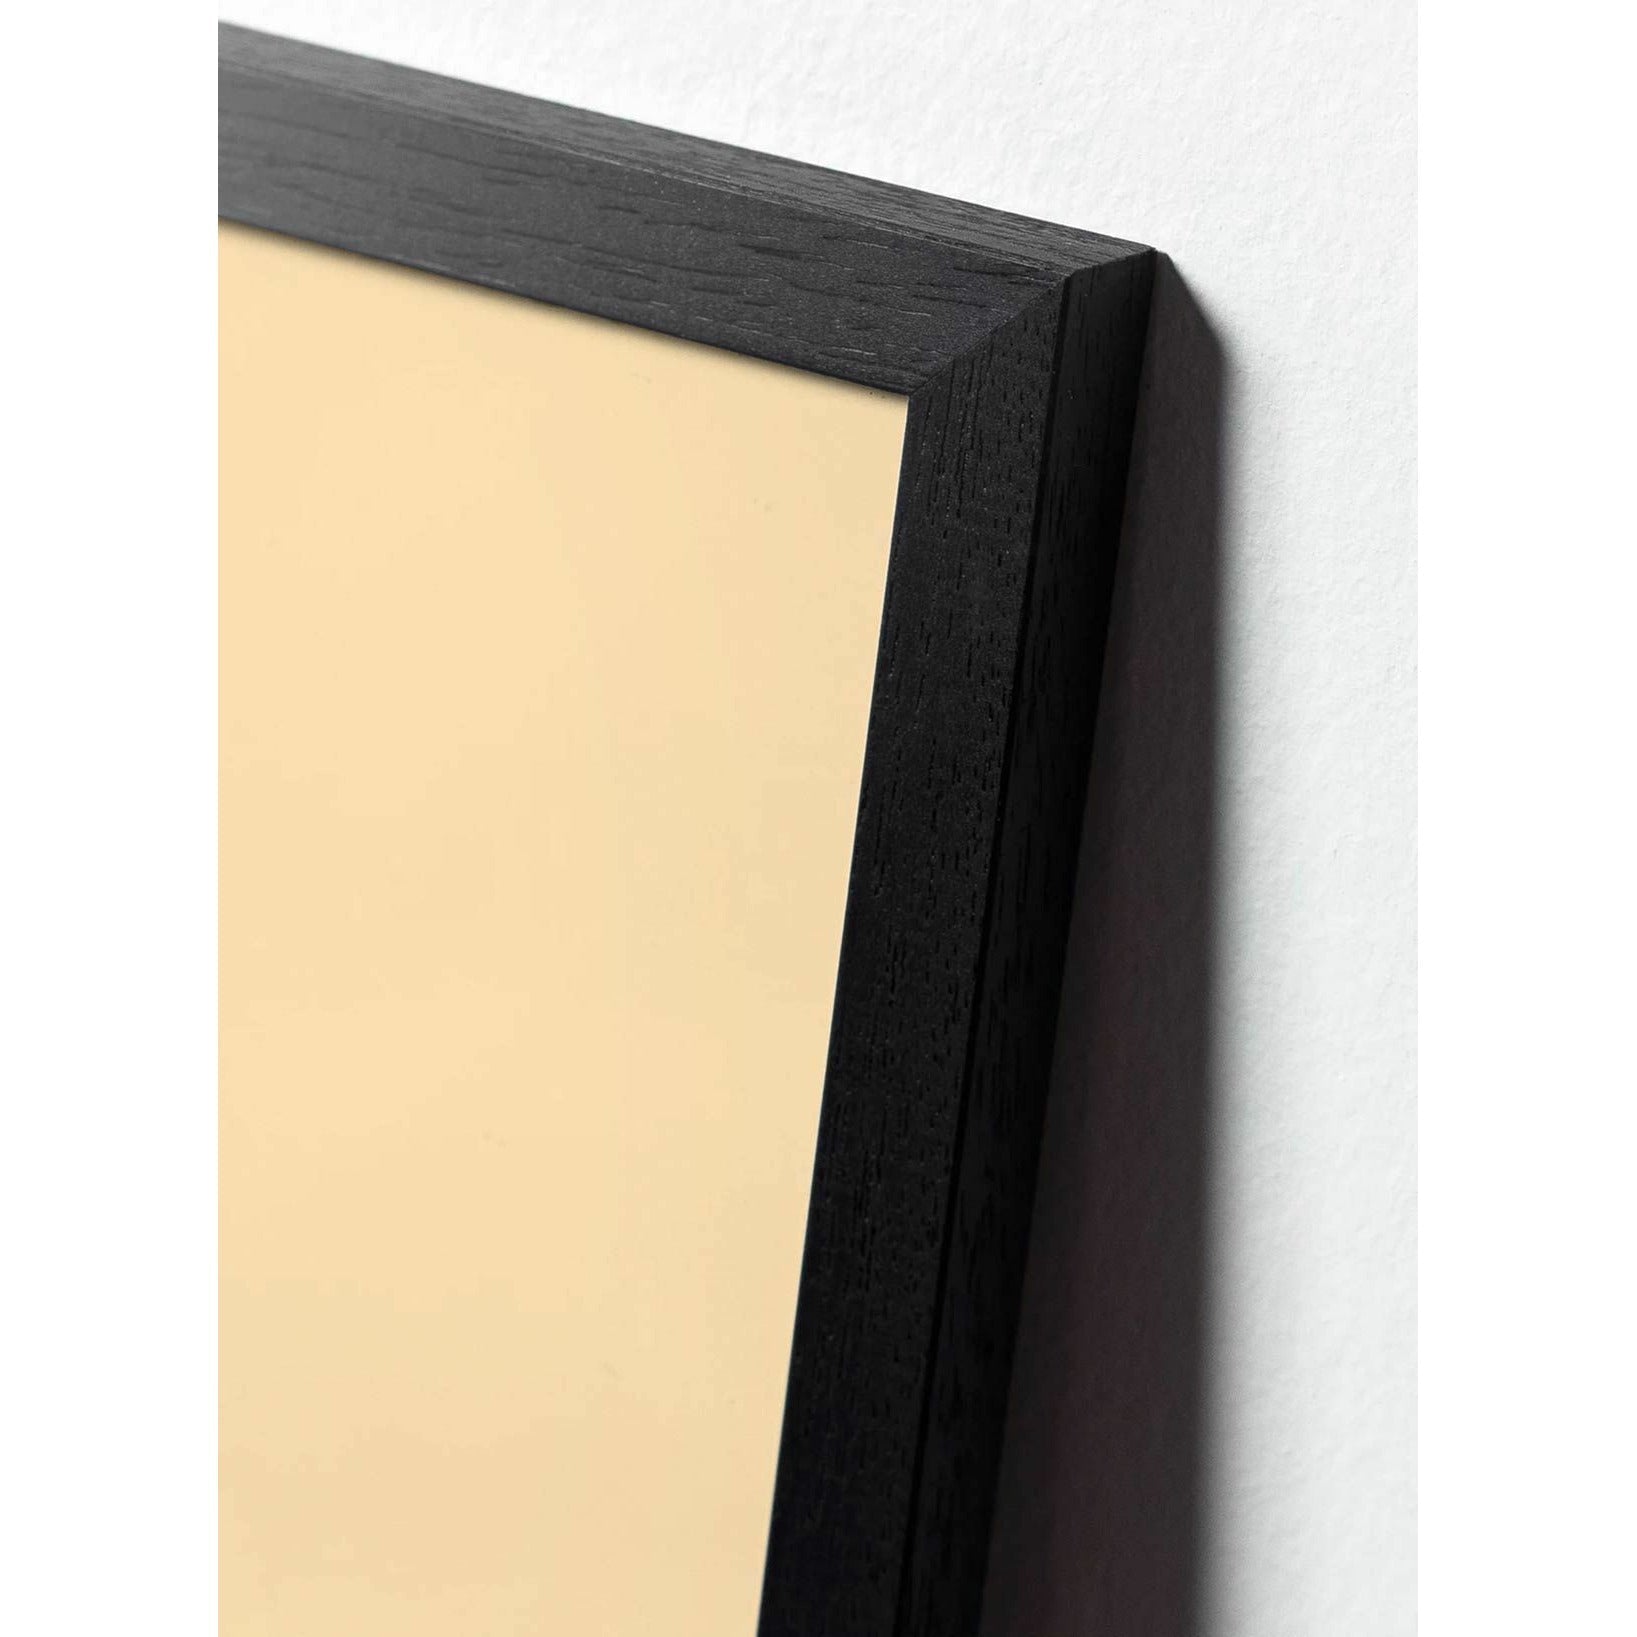 Póster clásico de cono de pino de creación, marco en madera lacada negra de 30x40 cm, fondo amarillo